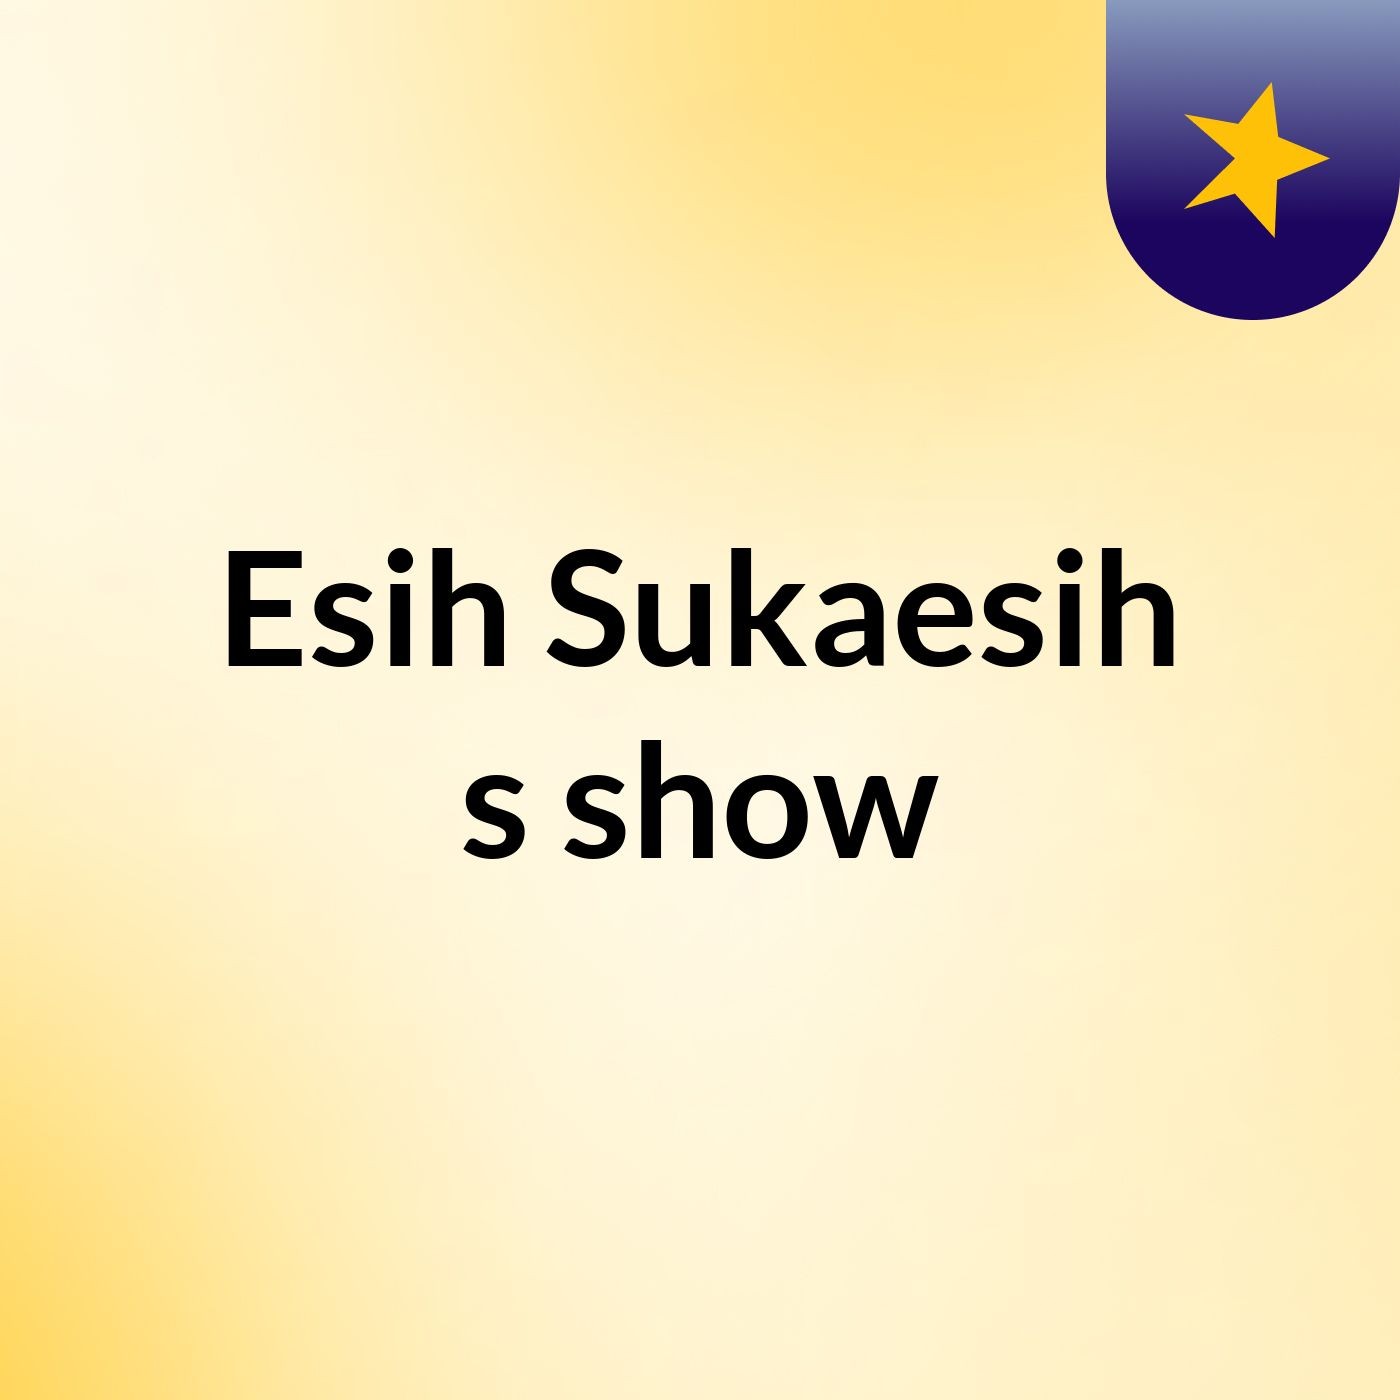 Esih Sukaesih's show